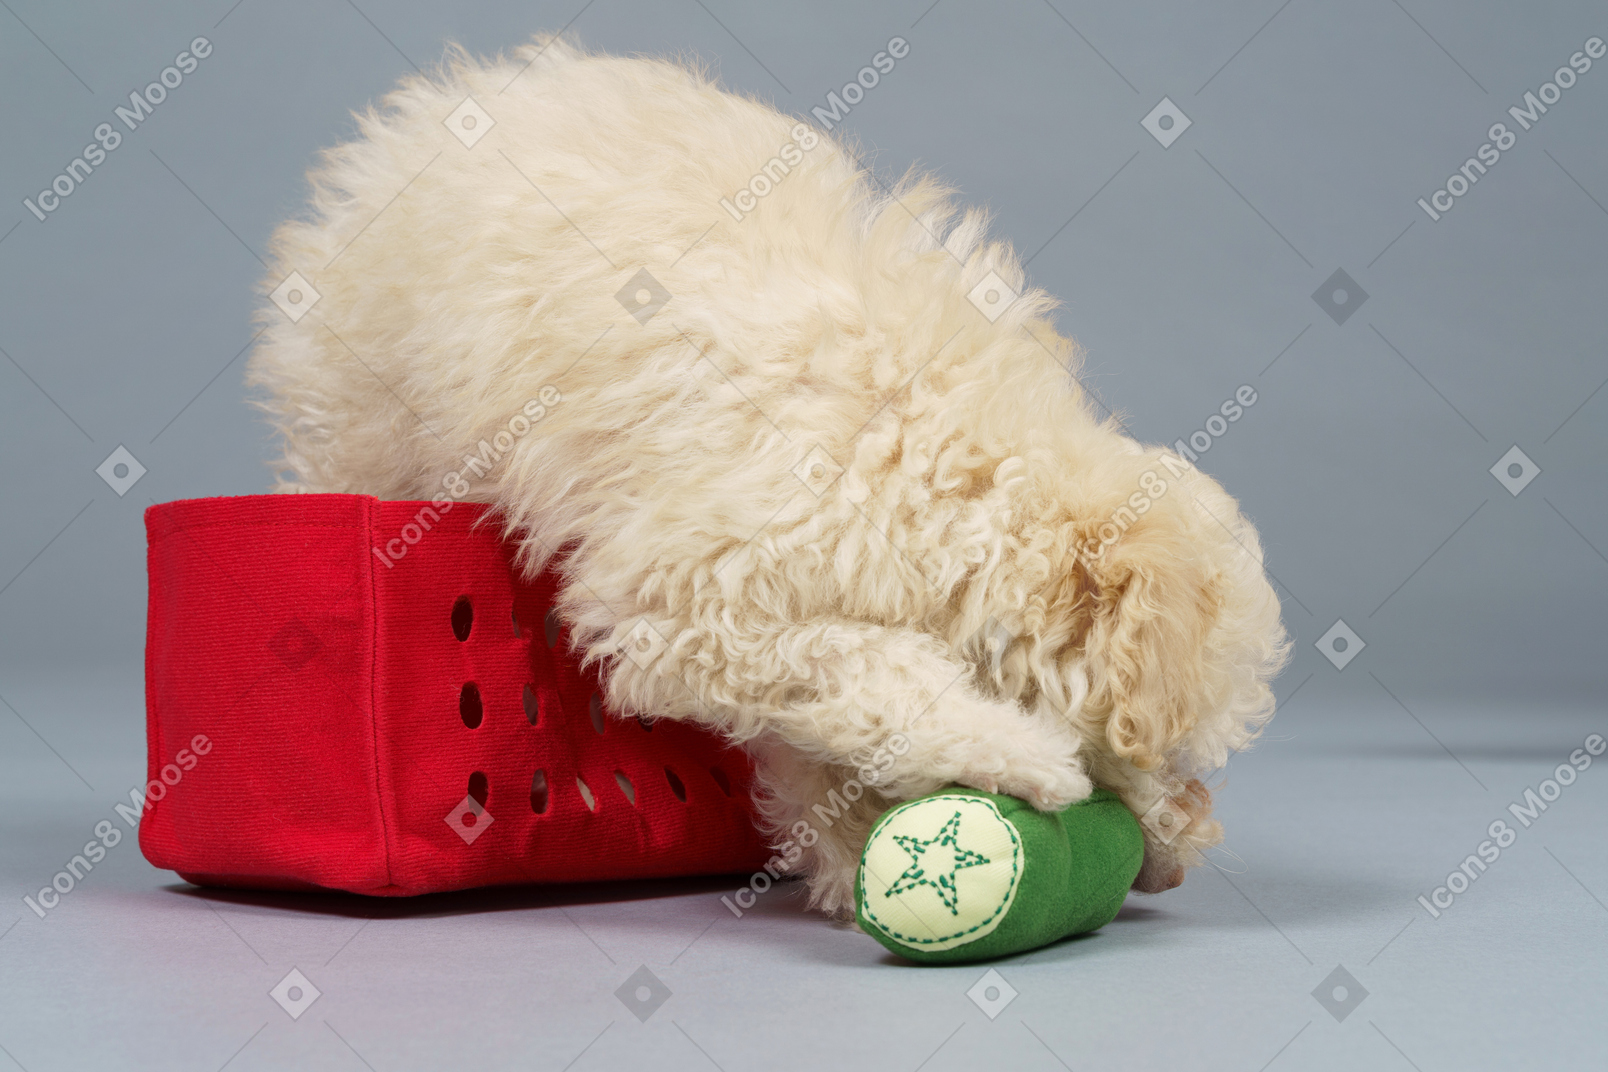 De corpo inteiro de um pequeno poodle sentado em um carrinho vermelho e brincando com brinquedos